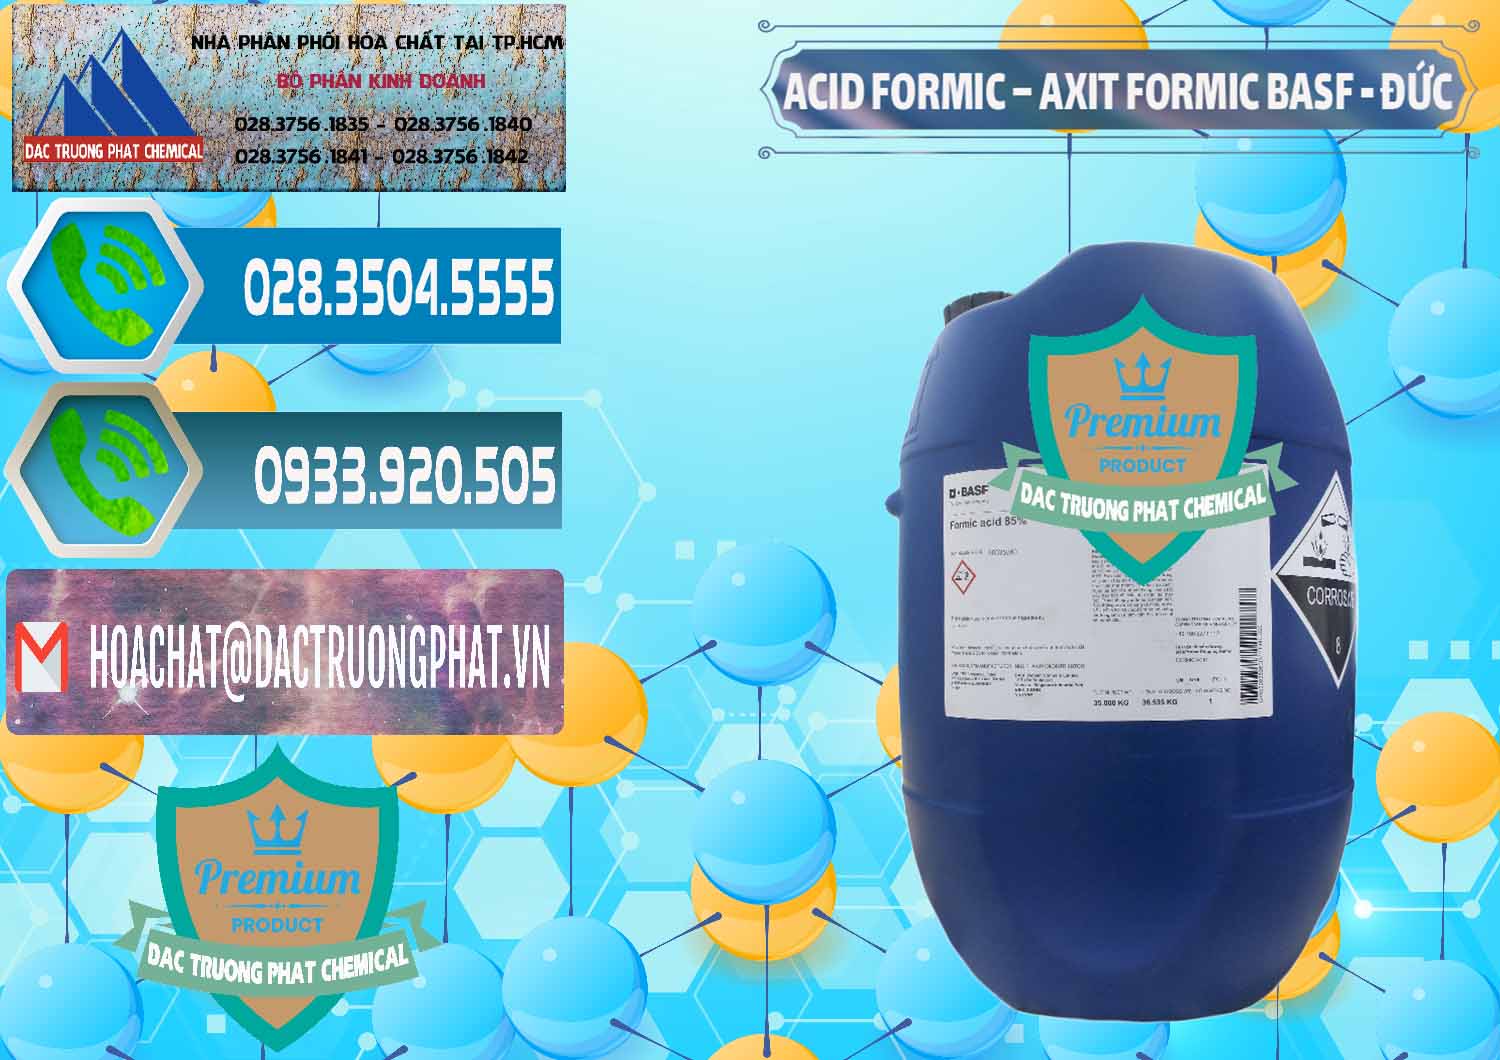 Nơi chuyên bán - cung cấp Acid Formic - Axit Formic BASF Đức Germany - 0028 - Công ty chuyên phân phối & cung ứng hóa chất tại TP.HCM - congtyhoachat.net